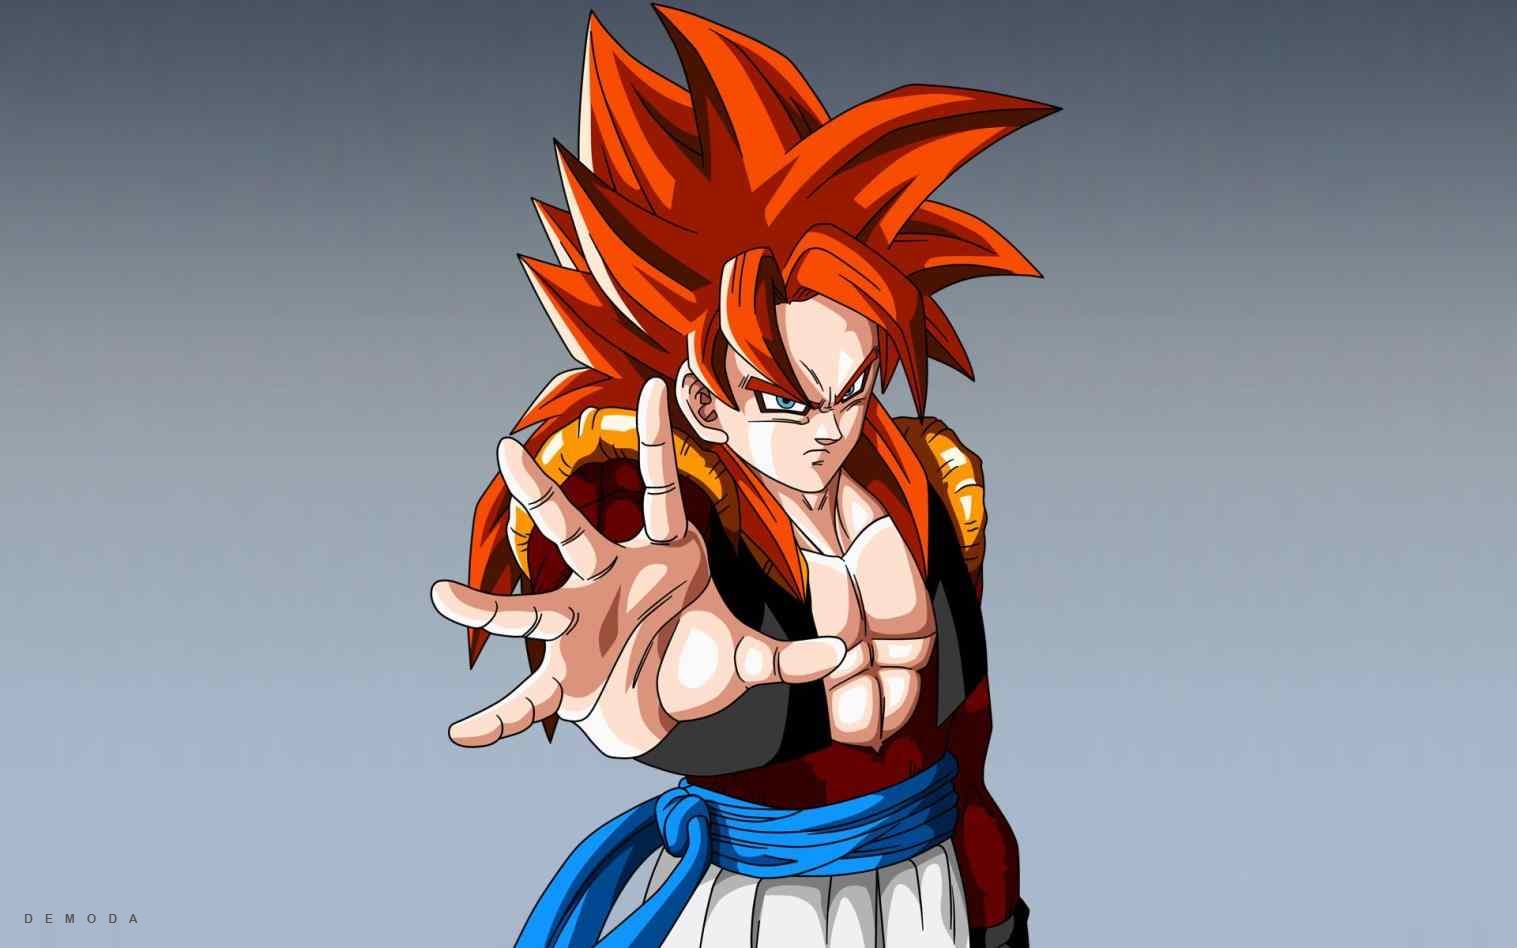 999 Hình ảnh Goku đẹp nhất  Bộ sưu tập hình ảnh Goku siêu đẹp với chất  lượng 4K hoàn toàn